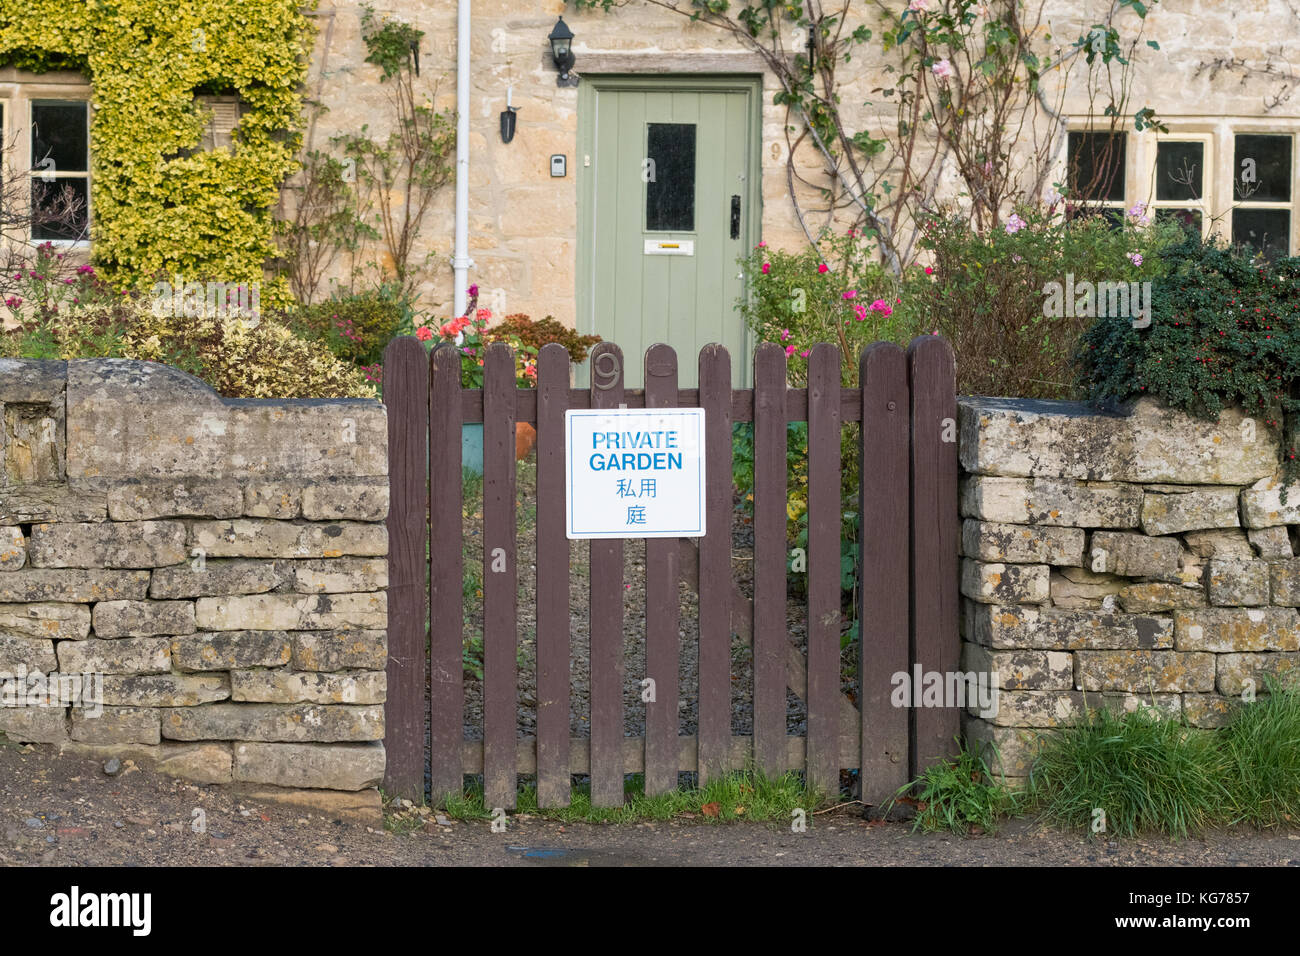 Bibury Tourism - 'Private Garden'-Schild am Gartentor auf Englisch und Japanisch geschrieben - Bibury, Gloucestershire, England, Großbritannien Stockfoto